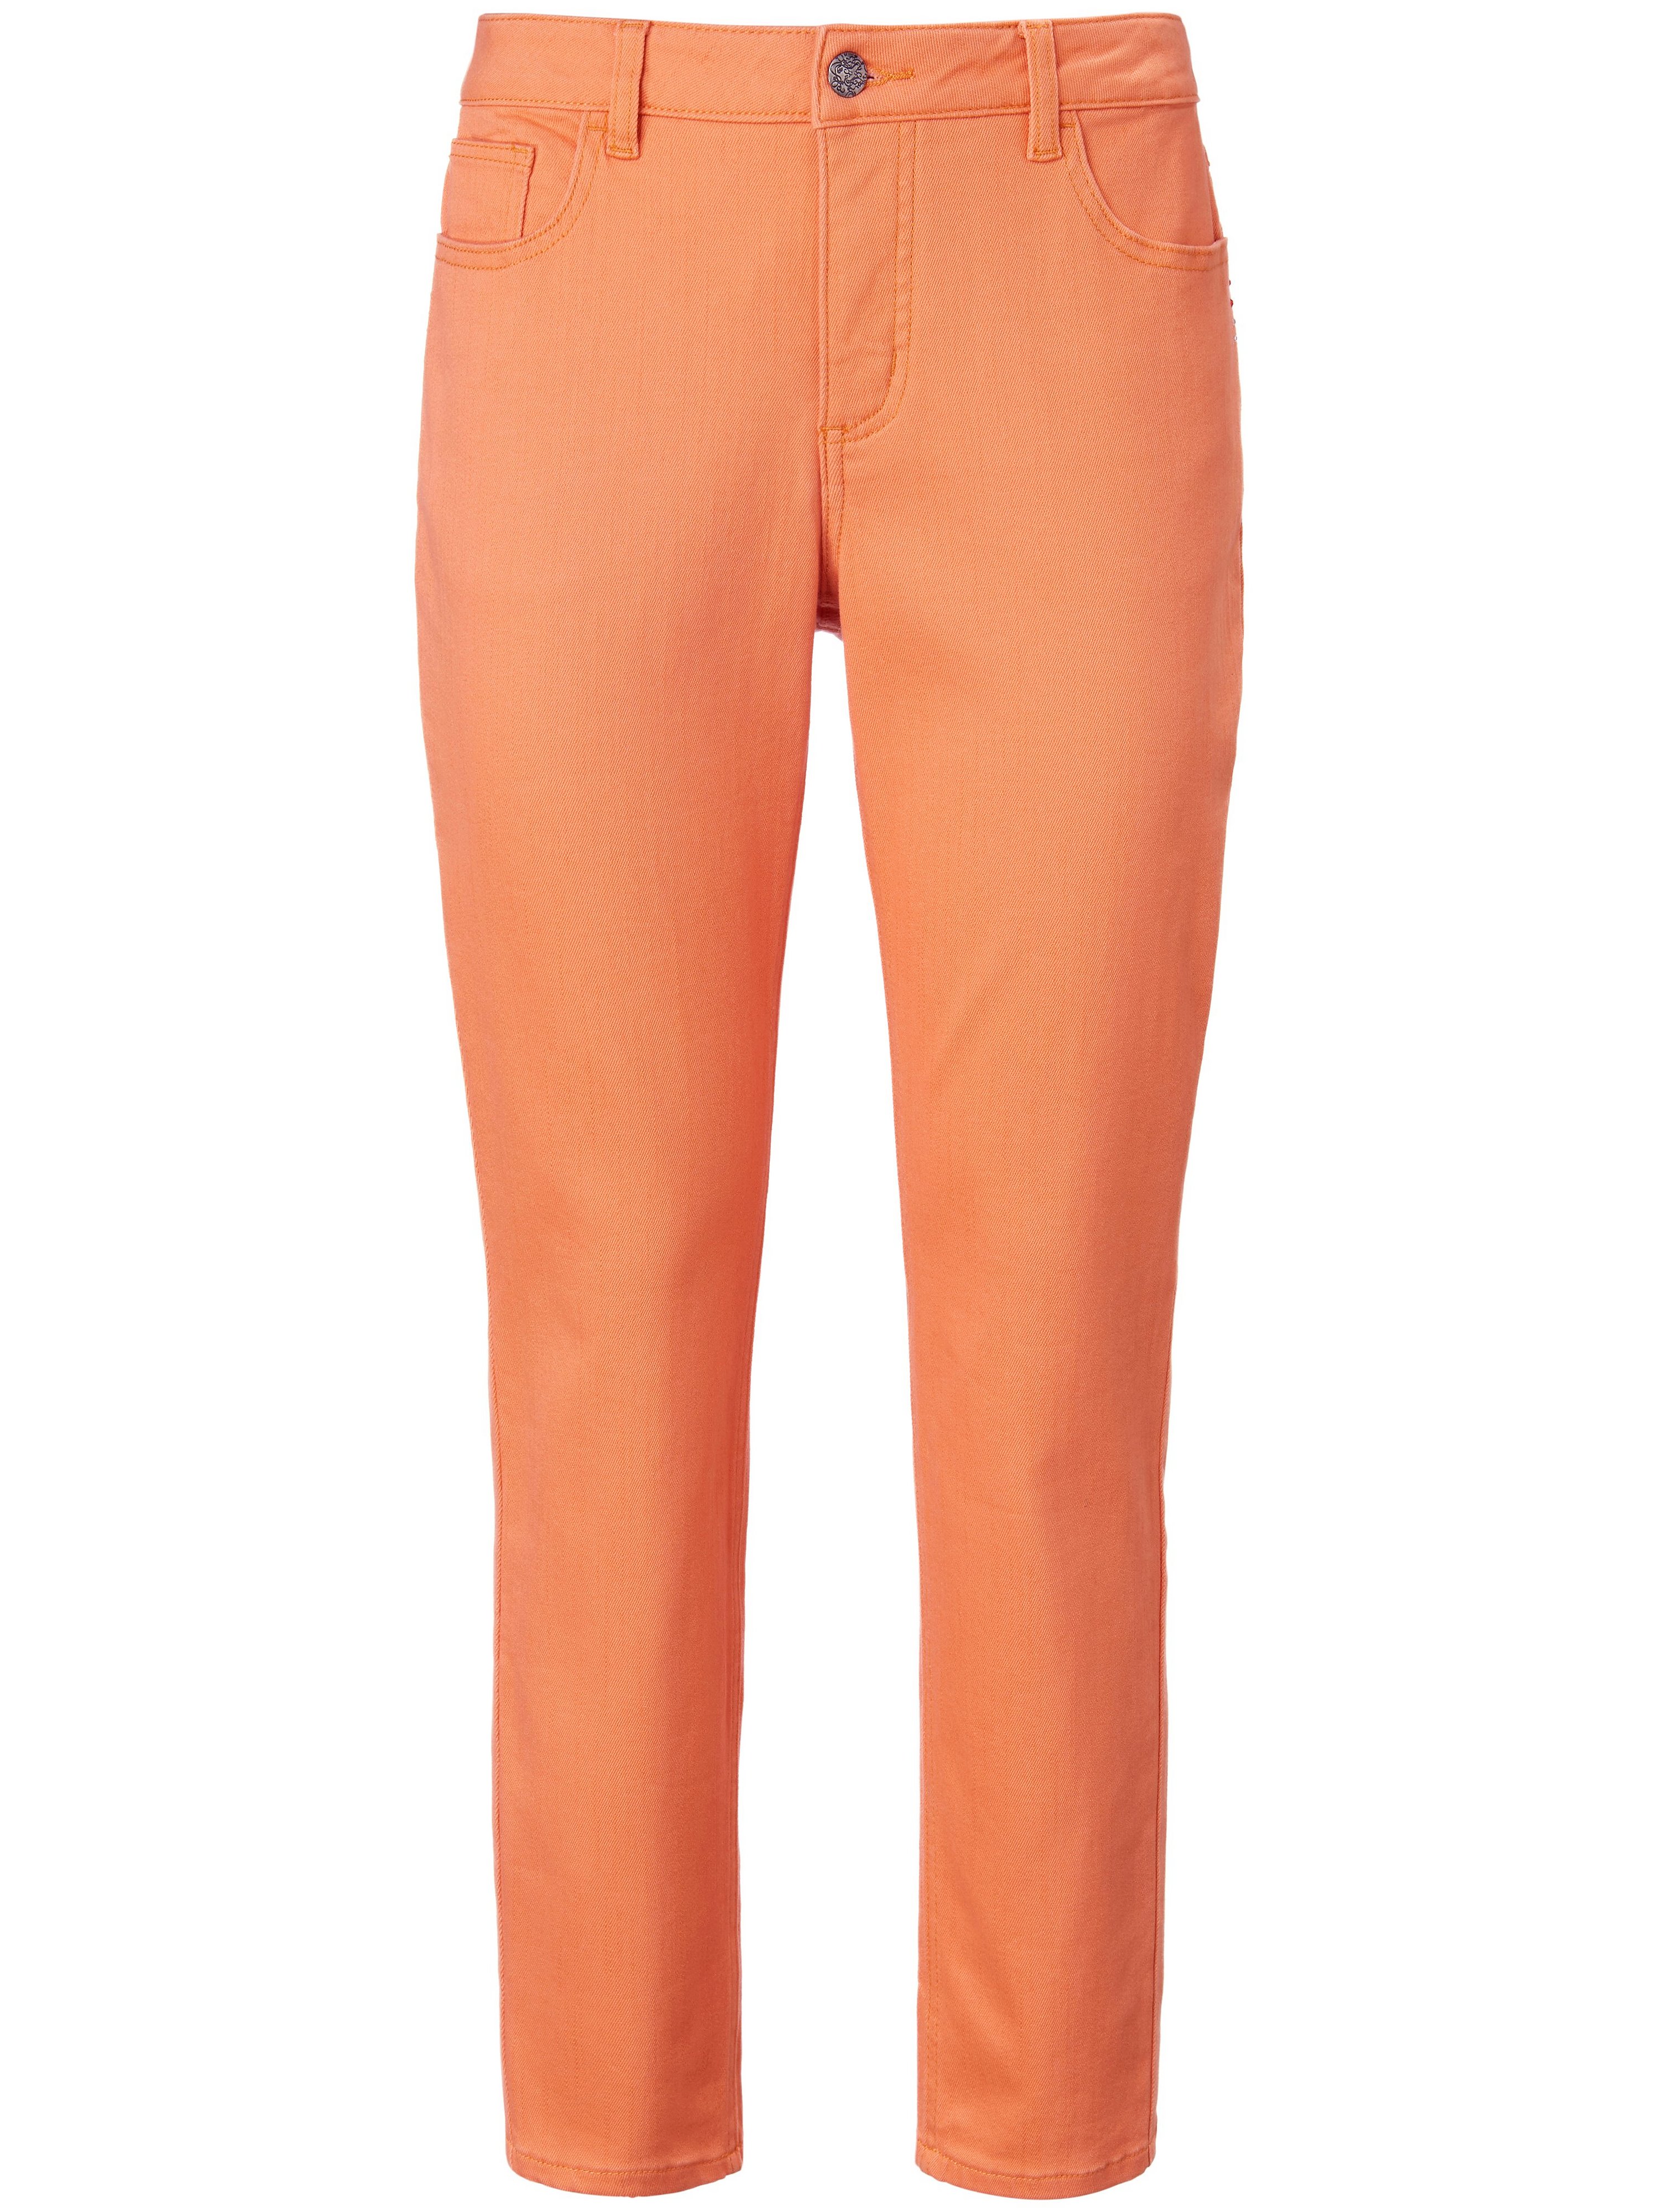 Enkellange jeans smalle pijpen Van MYBC oranje